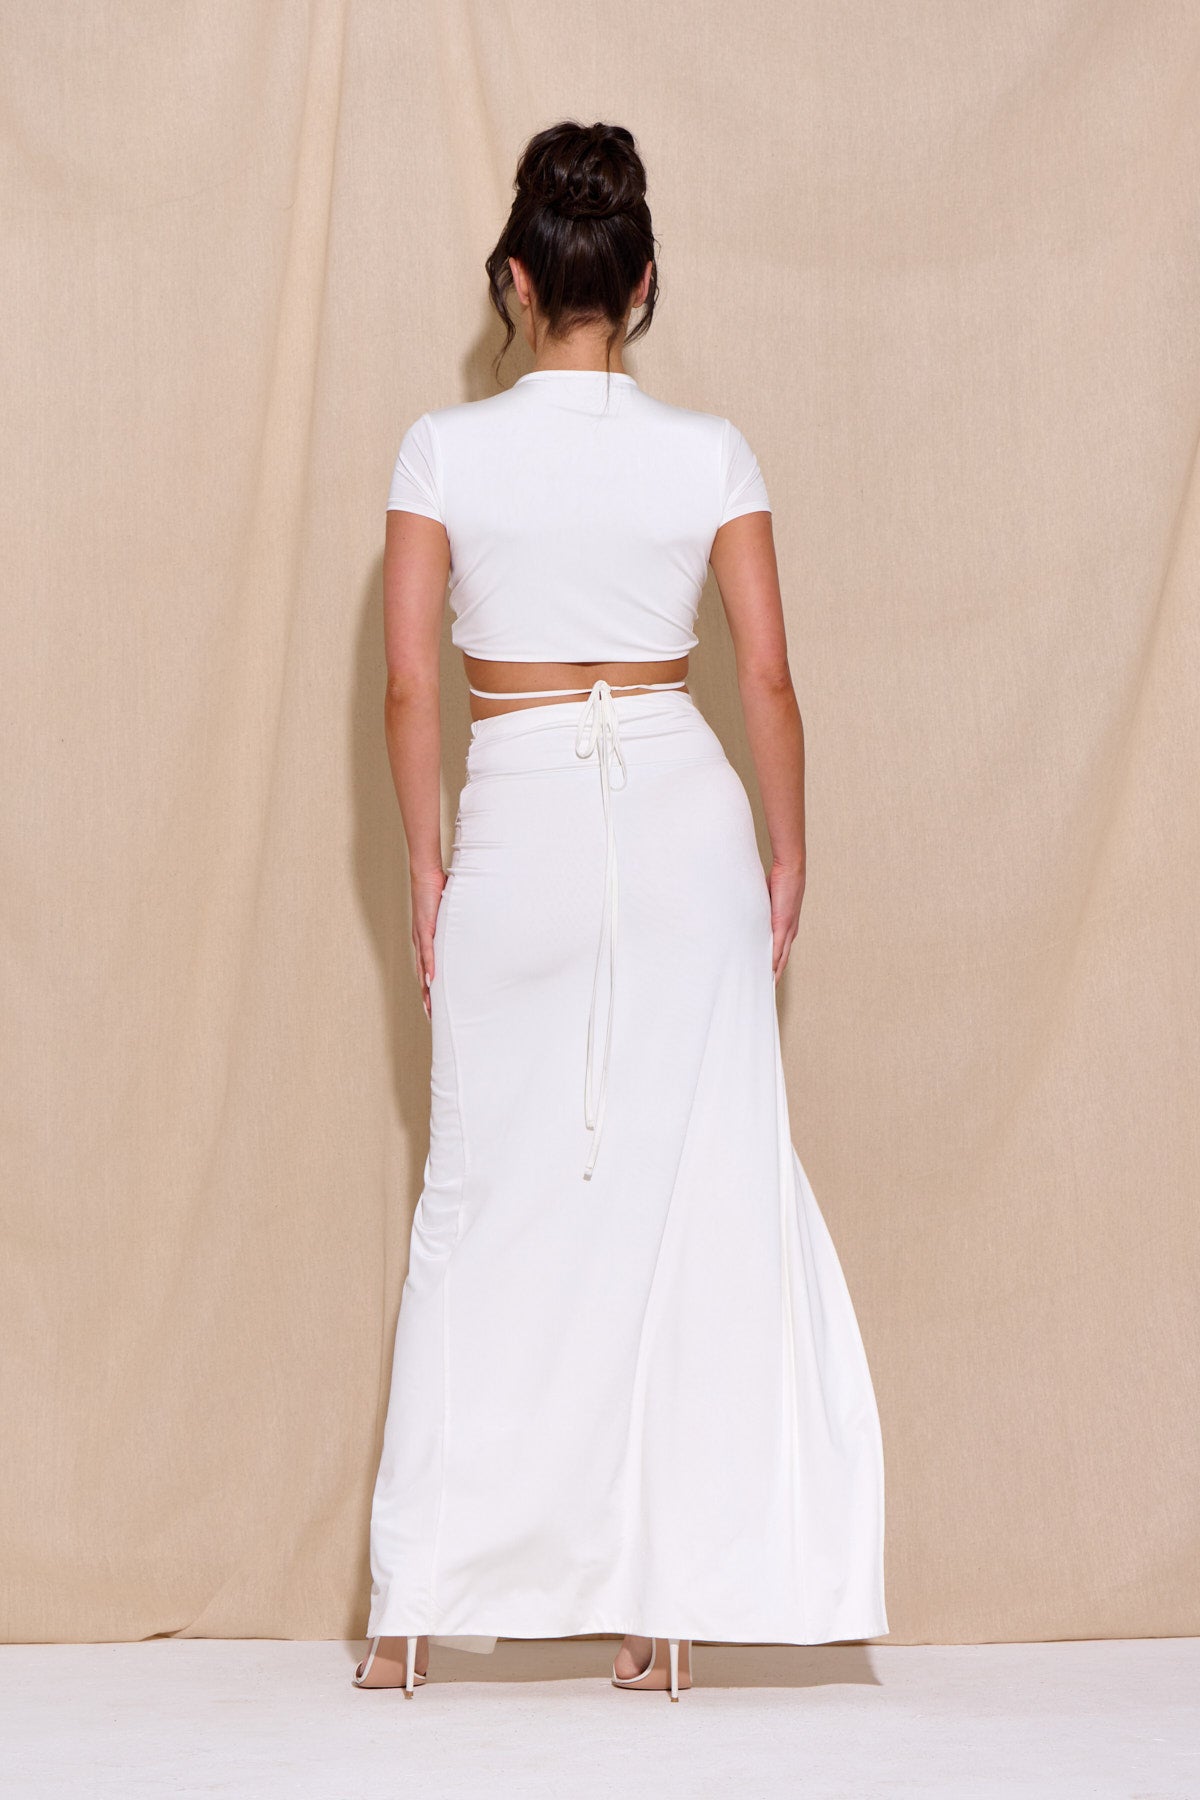 LUISA White Maxi Skirt Co Ord